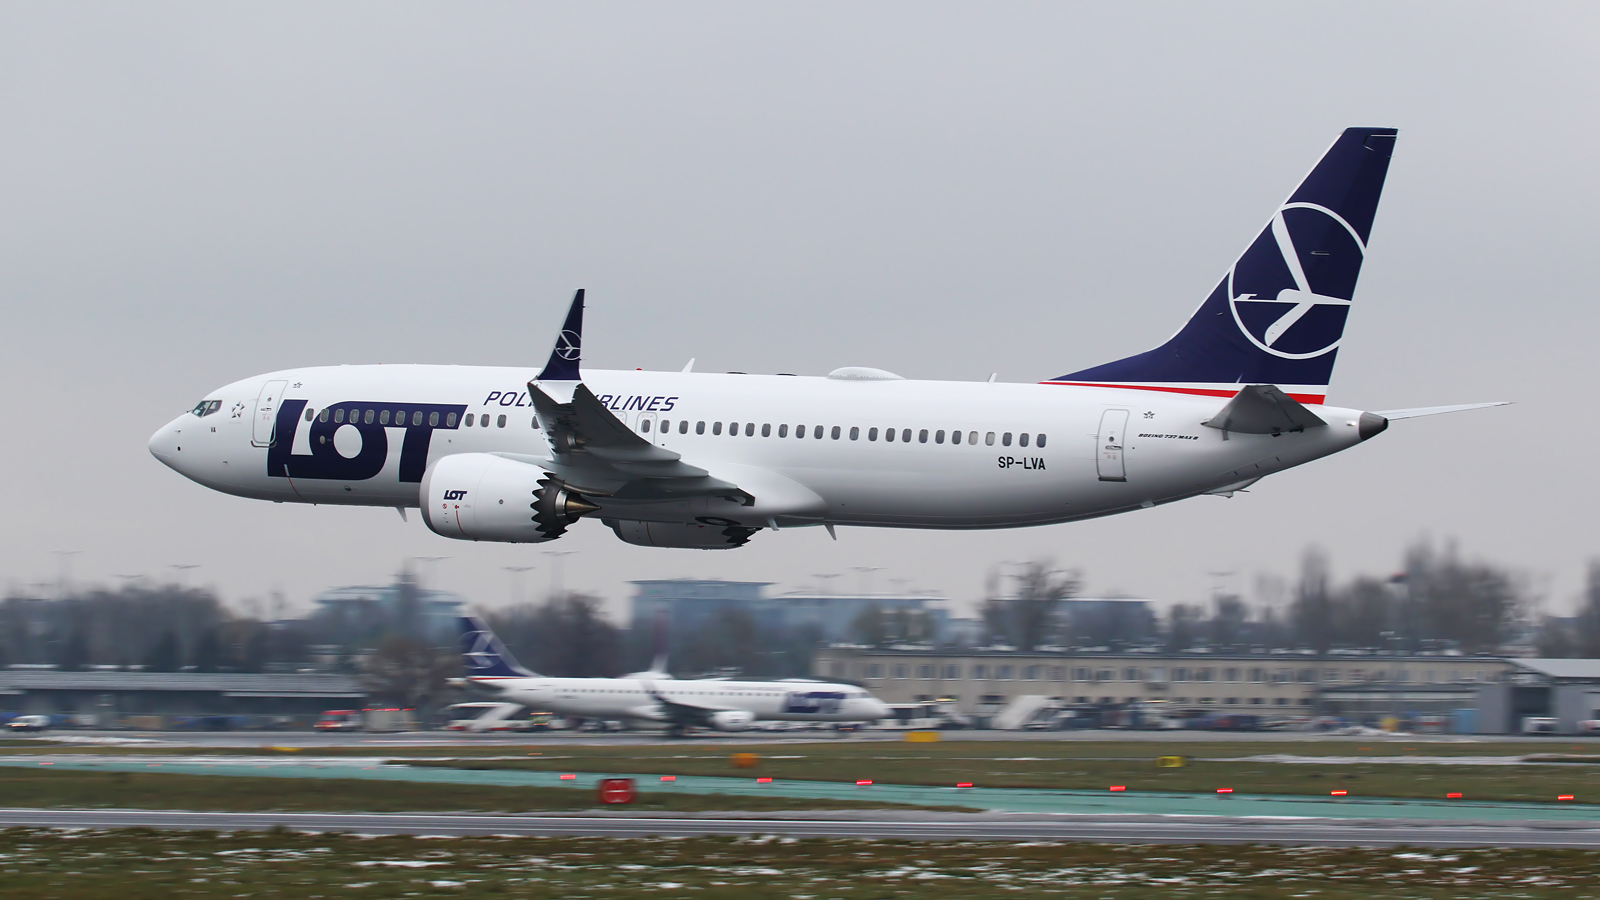 Boeing 737 MAX-ის გაჩერების შემდეგ LOT-მა 4 თვითმფრინავი იქირავა